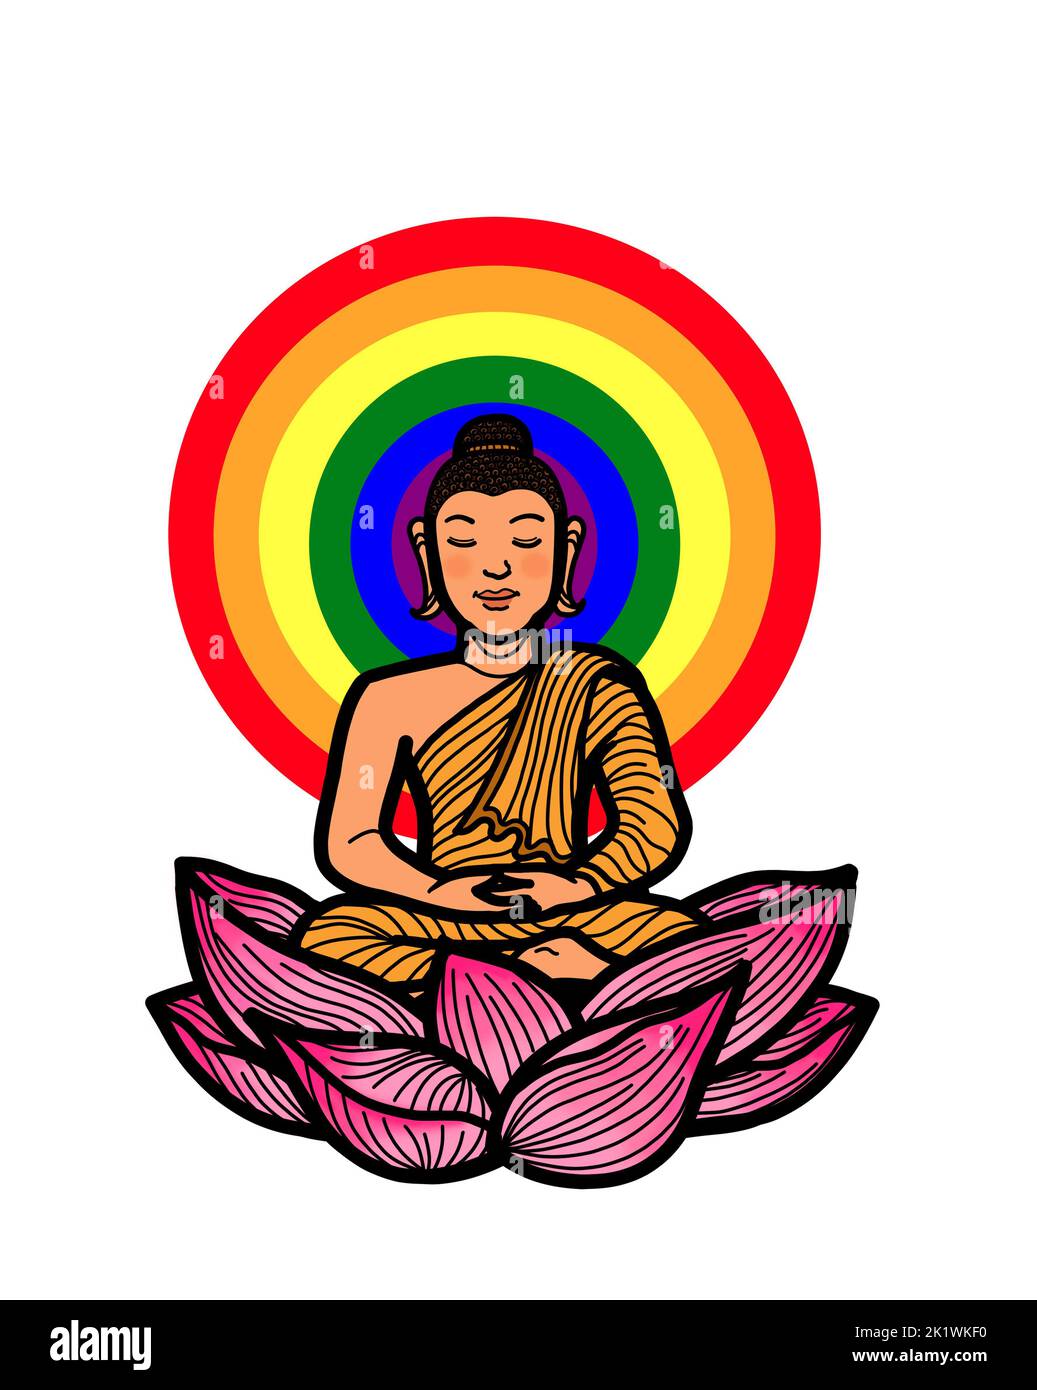 Gautama Buddha sitzt in Lotushaltung und meditiert mit schwuler Regenbogenaura. Buddhistische Meditationspraxis für Erleuchtung, Achtsamkeit, Frieden, Harmonie und s Stockfoto